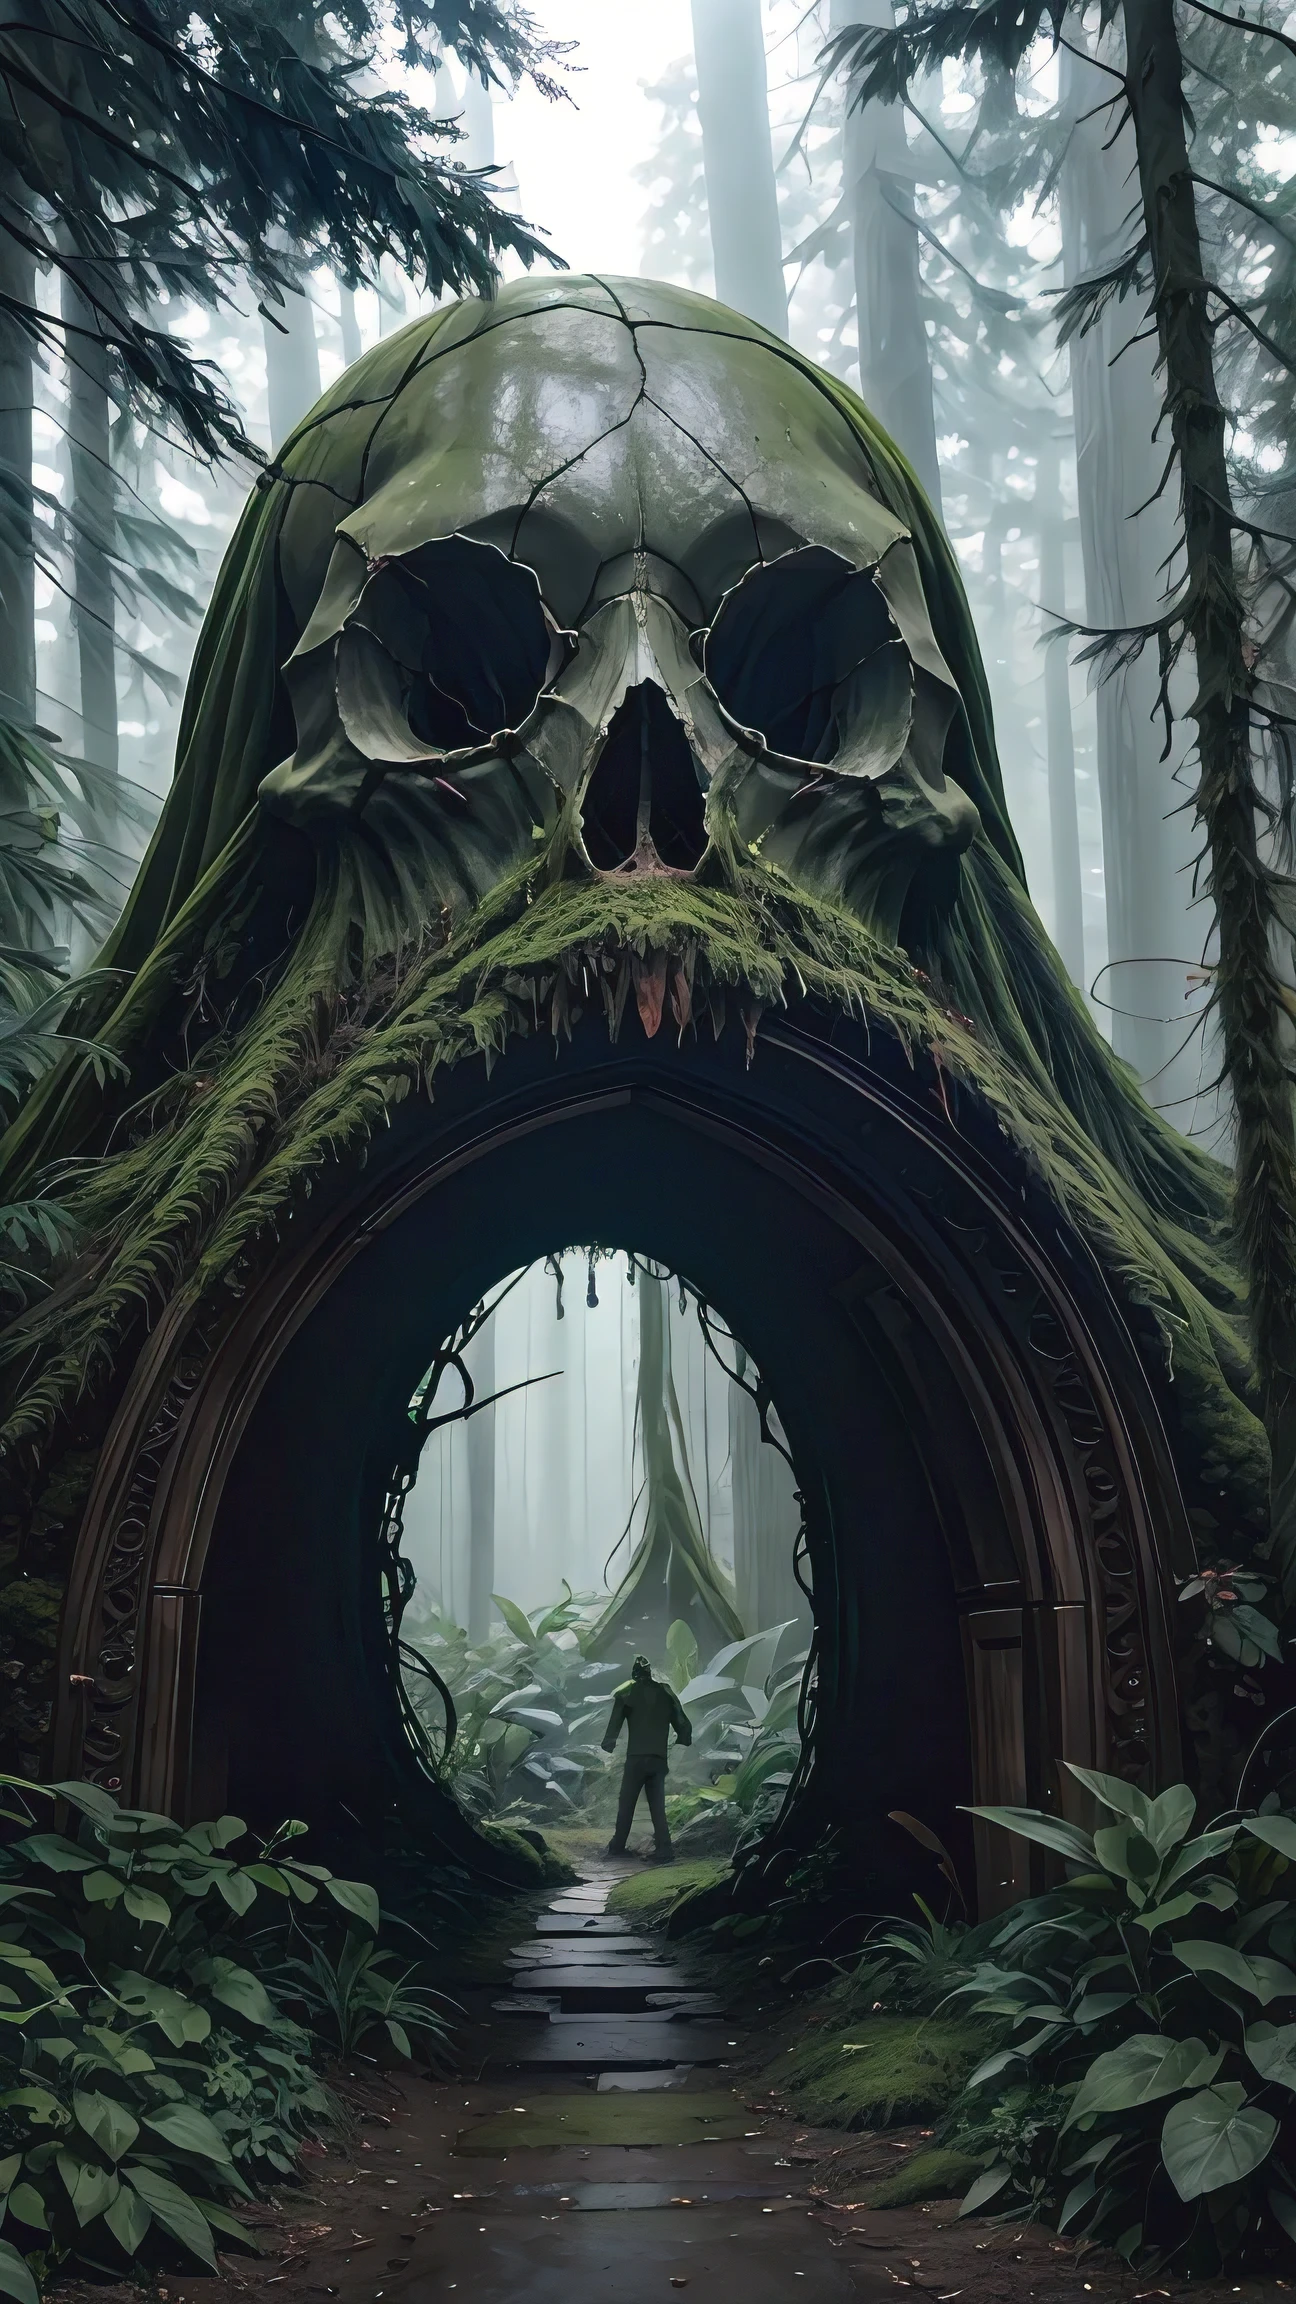 Фотография портала в форме гигантского черепа, покрытого мхом, в темном лесу, стиль фильма братьев Уорнер, мистика, психоделическая атмосфера, 35 мм